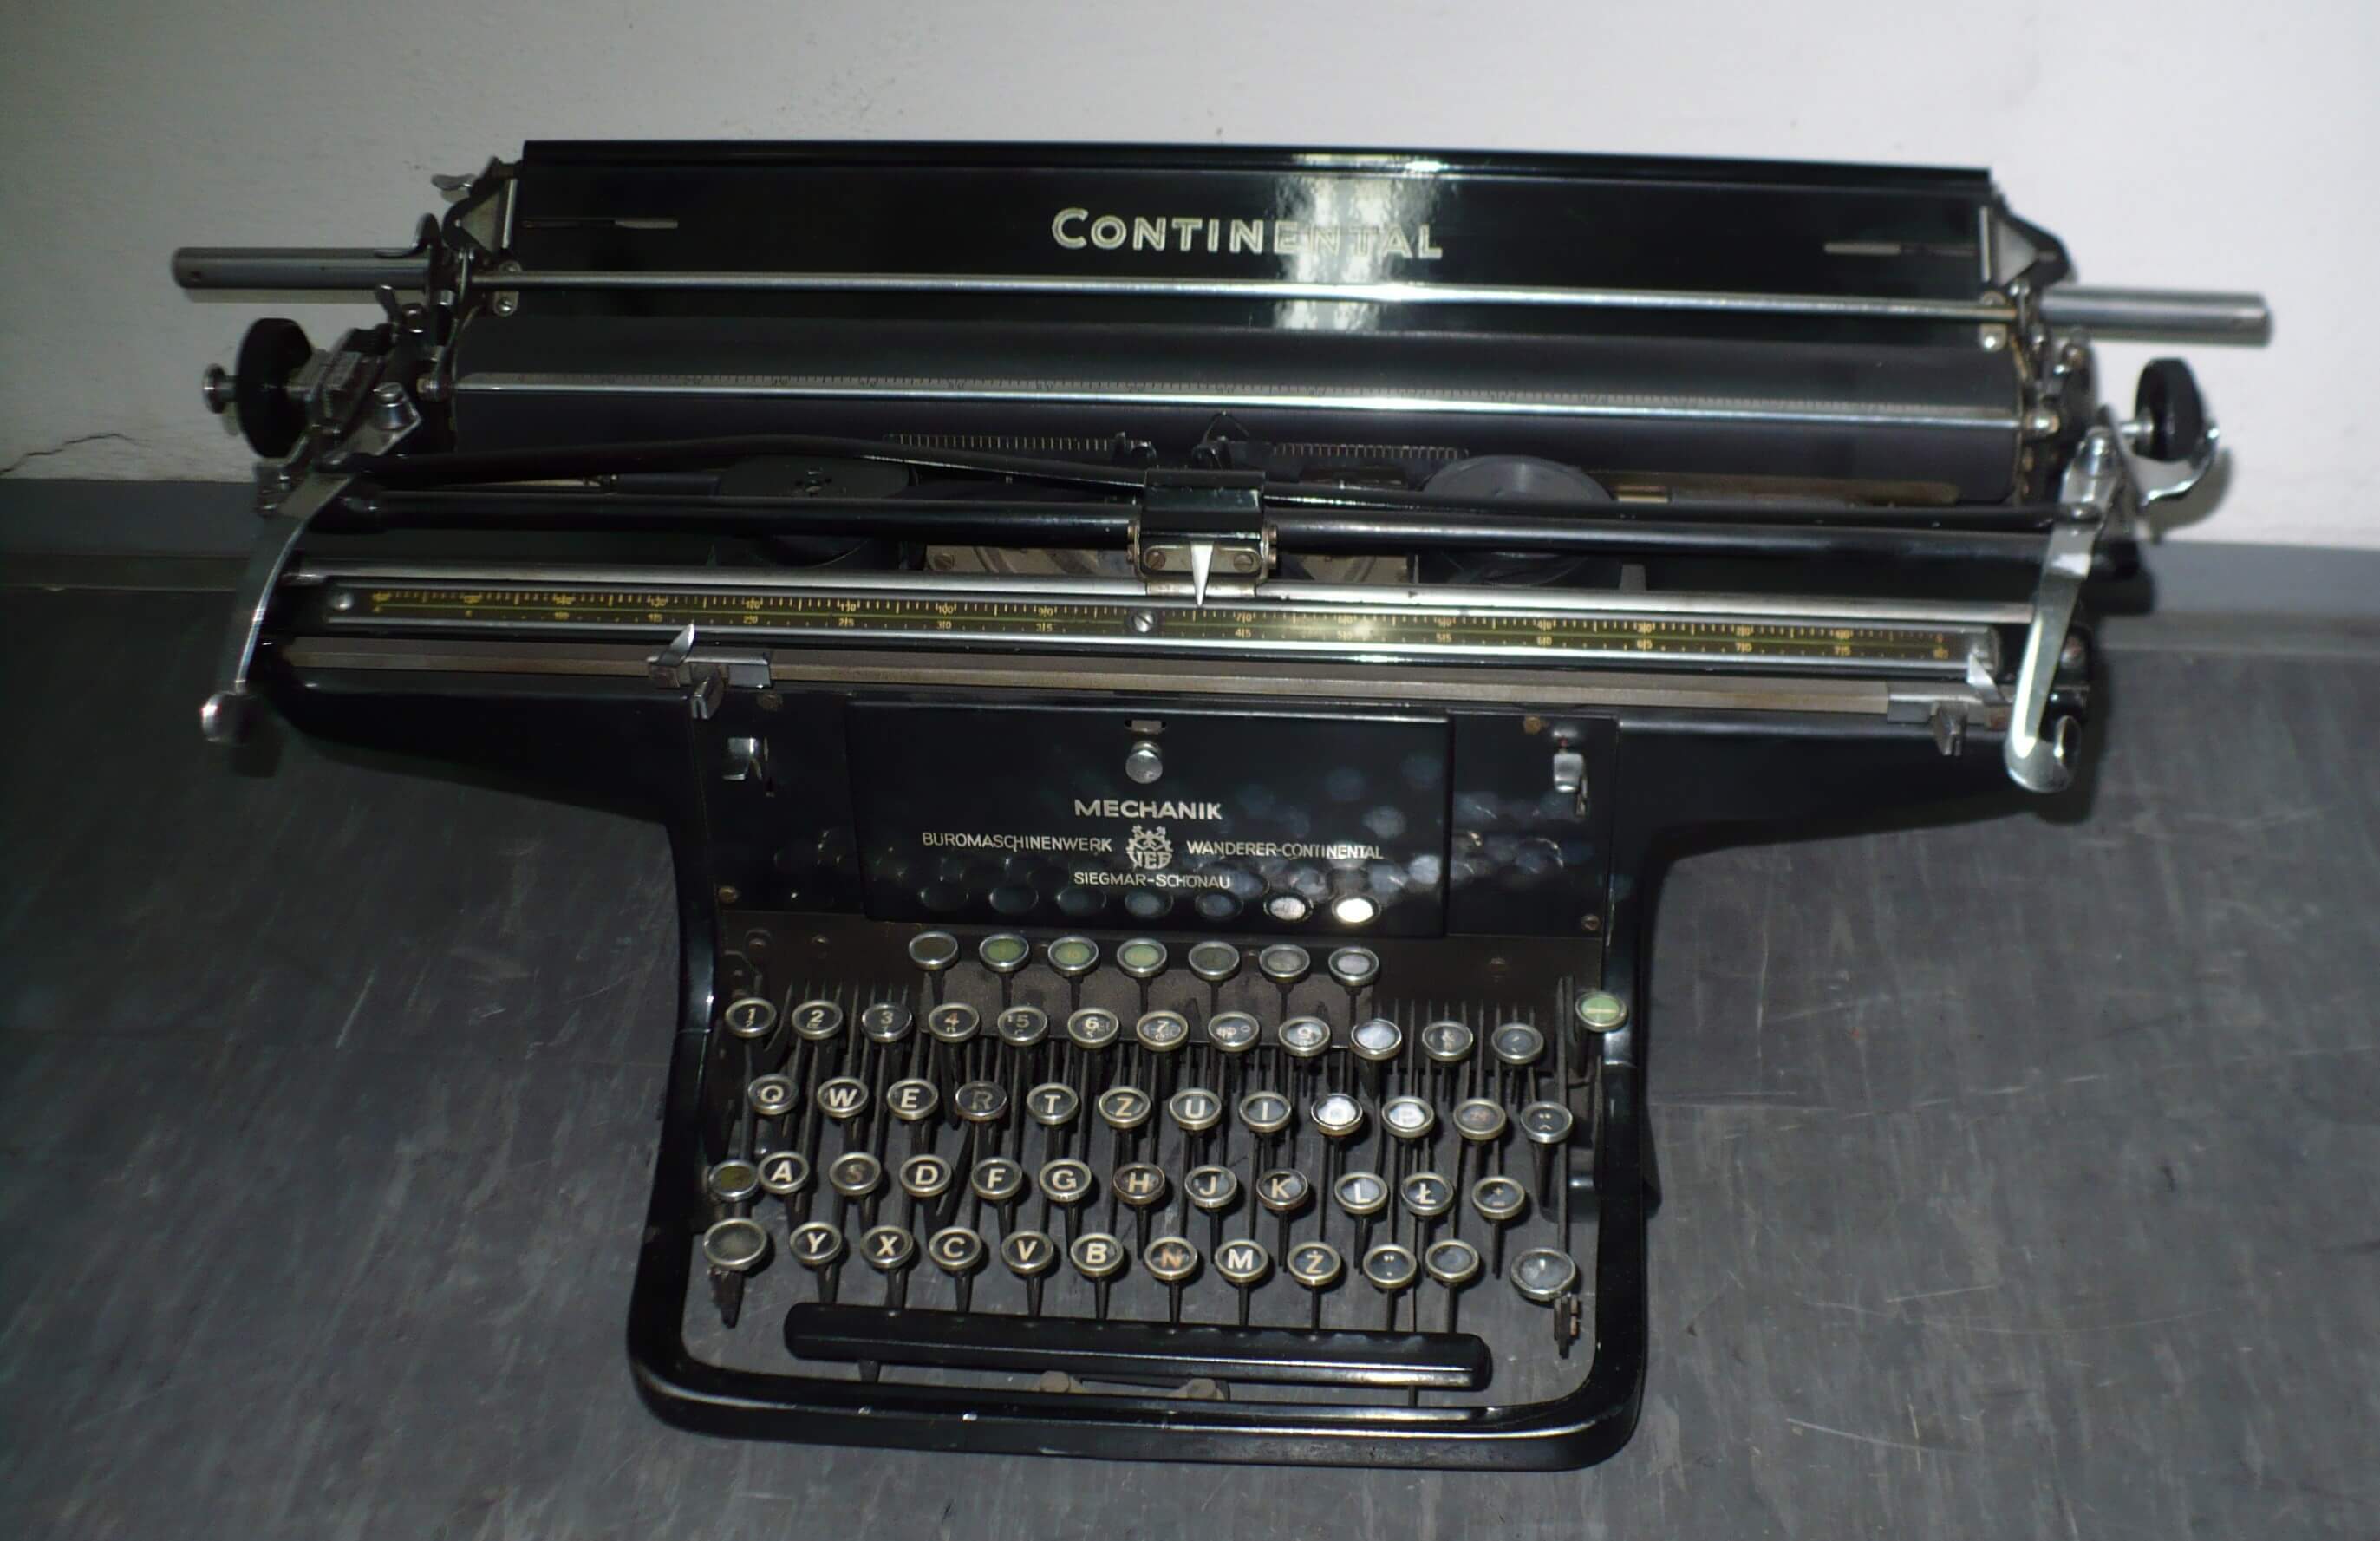 Maszyna do pisania